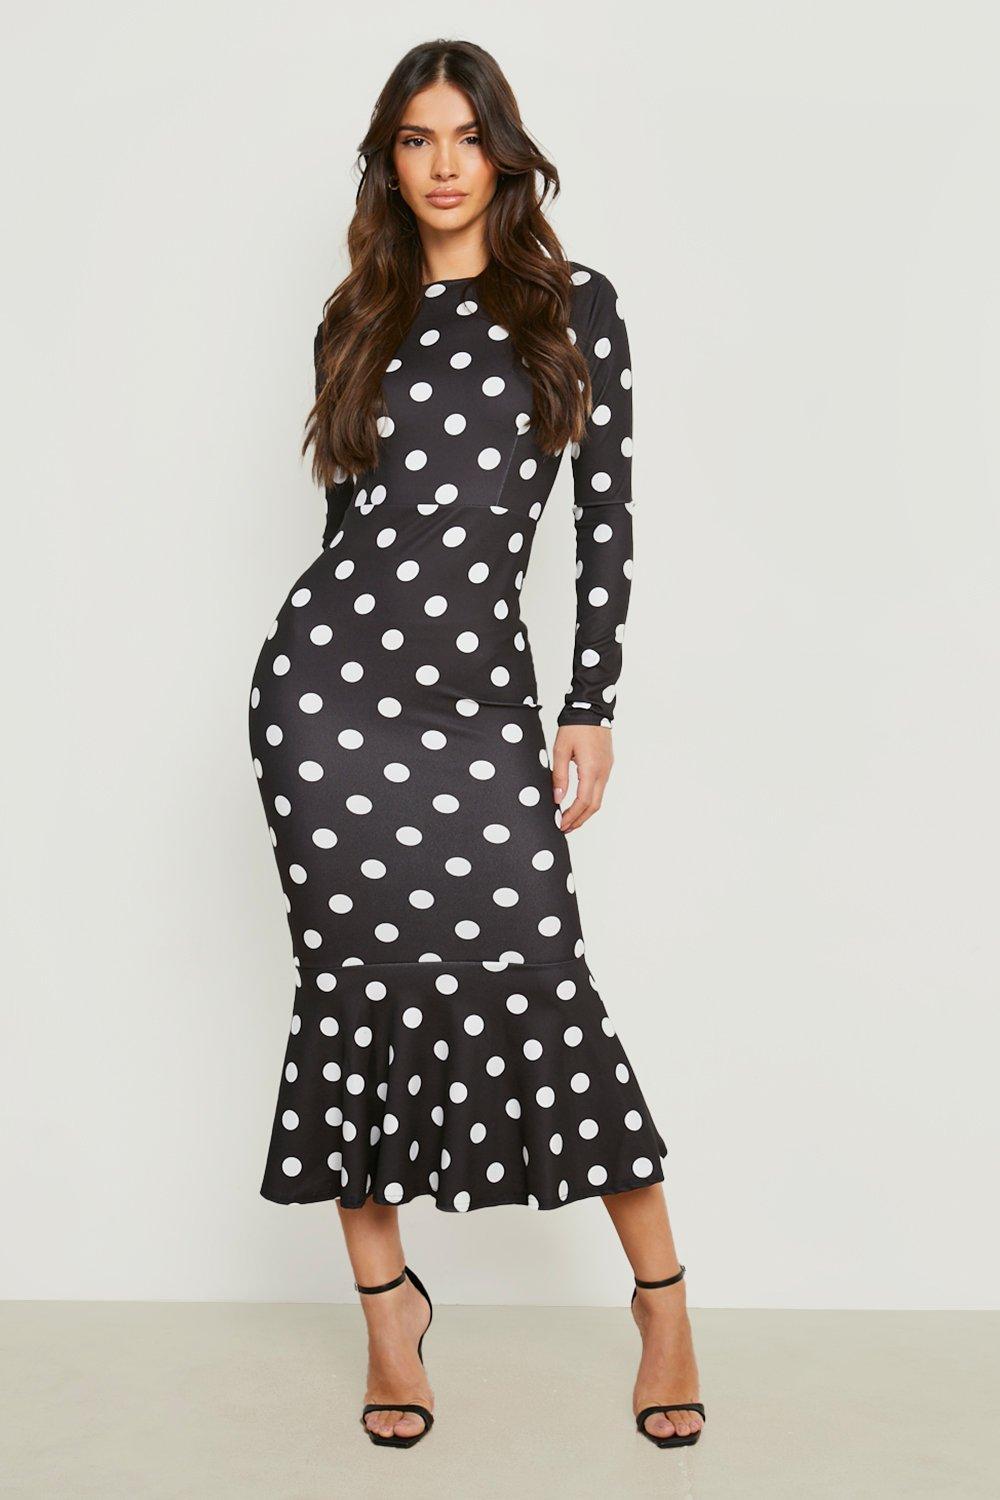 boohoo black and white polka dot dress